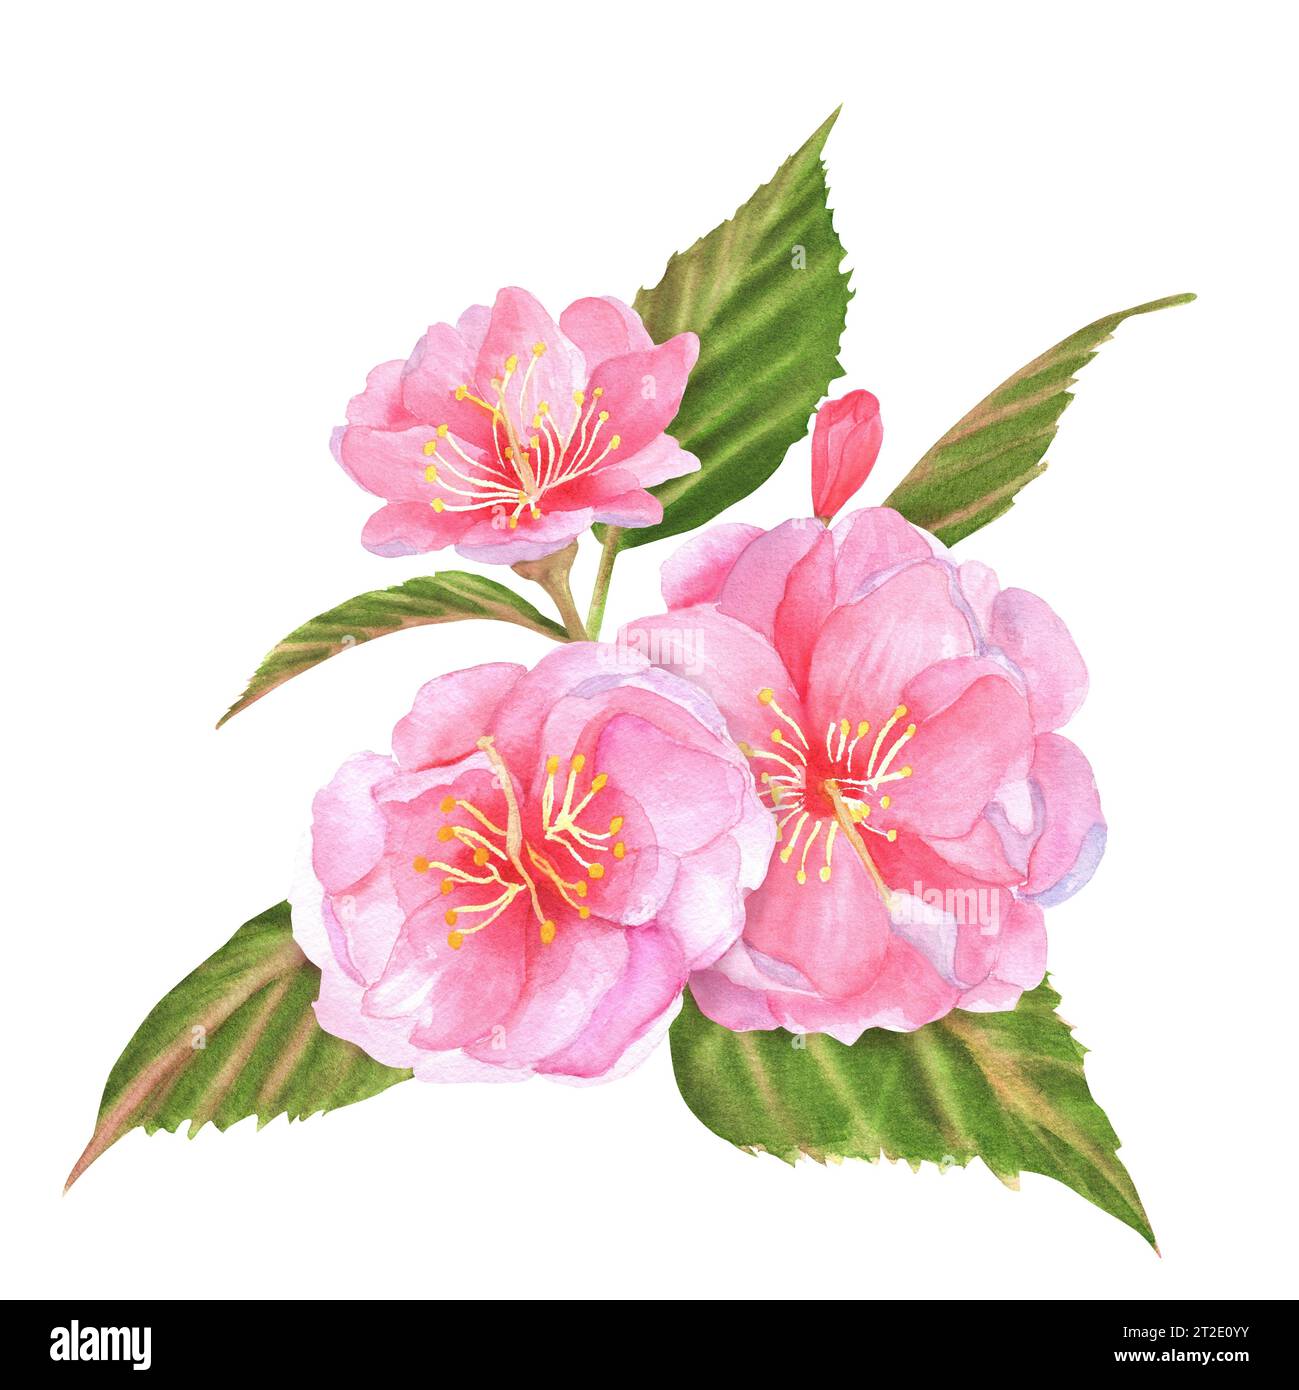 Handgezeichnete Aquarellillustration. Rosafarbene Kirschblüten (Sakura) mit grünen Blättern und Knospen Stockfoto